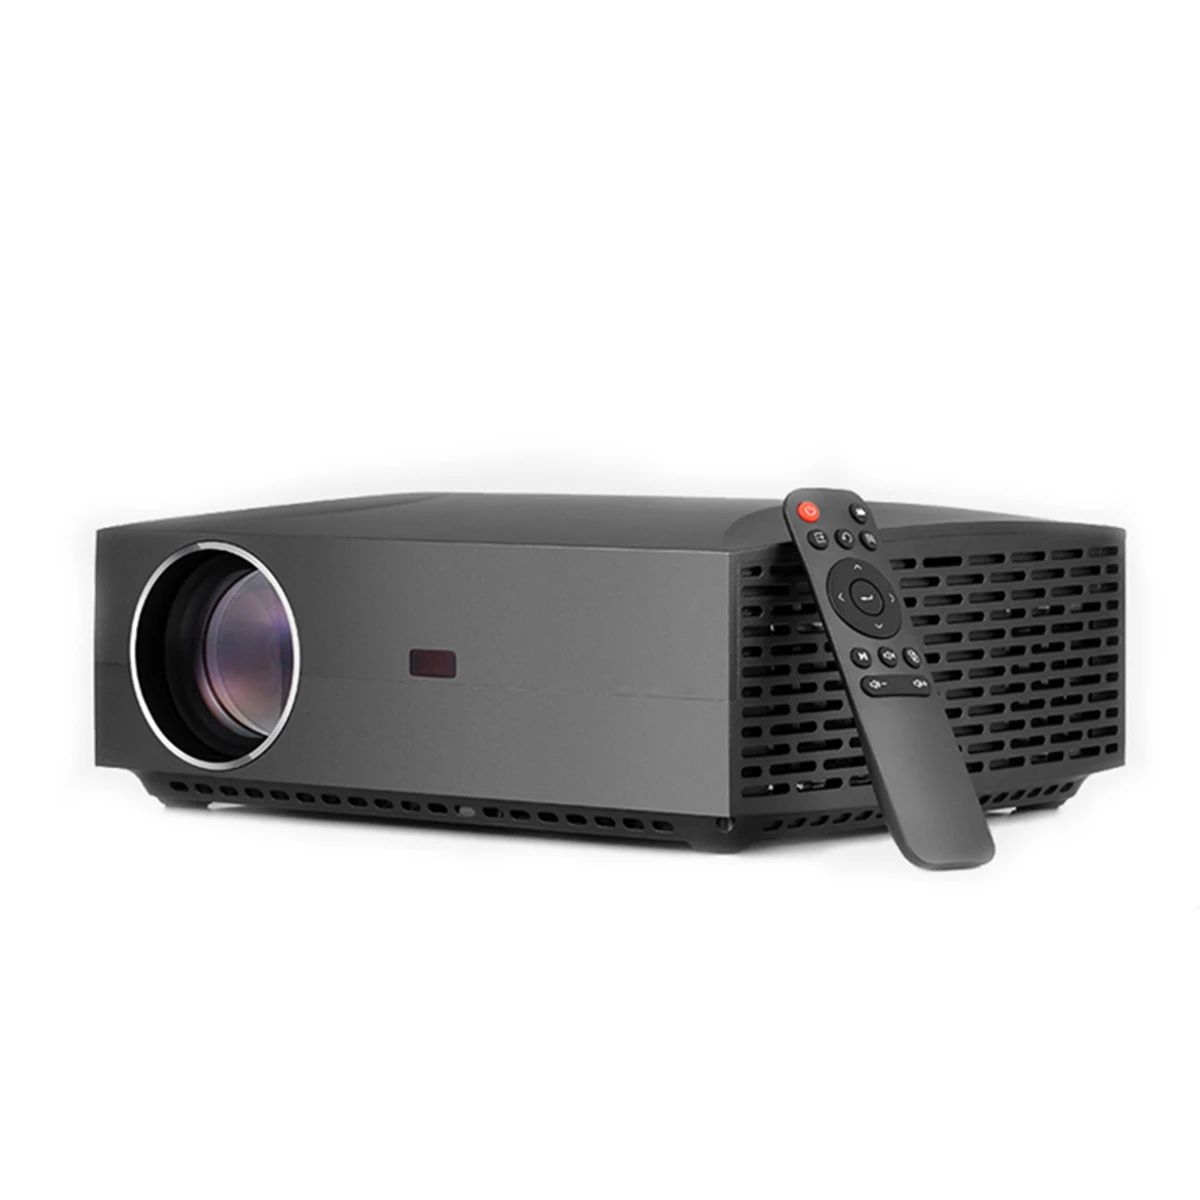 

ЖК-проектор 4200 лм Full HD 1920x108 0P с поддержкой 3D, портативный домашний кинотеатр, аудио и видео проектор, телефон с одинаковым экраном, европейск...